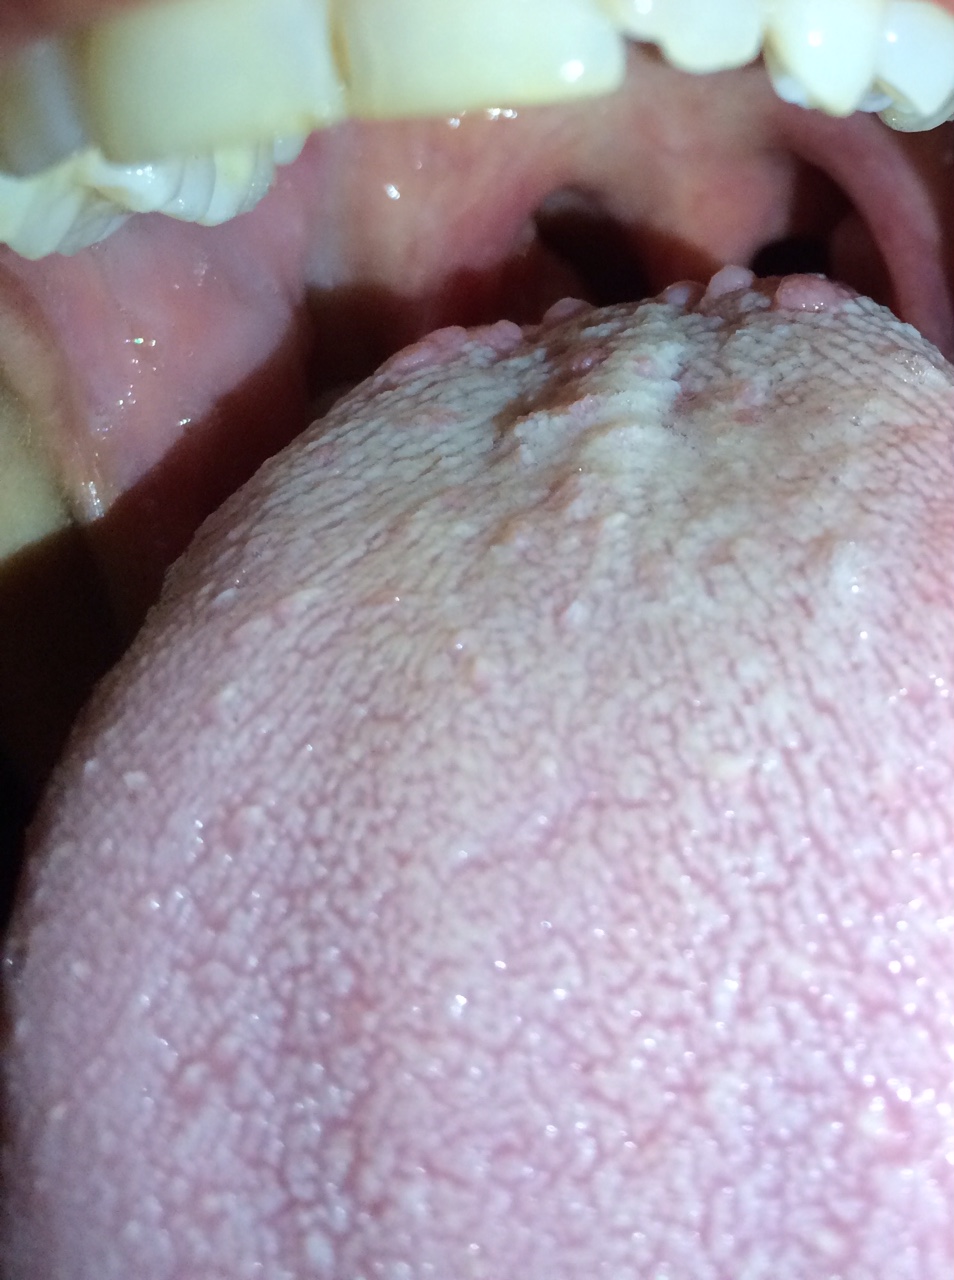 Ho iniziato ad avvertire sintomi riconducibili a quelli della bocca urente